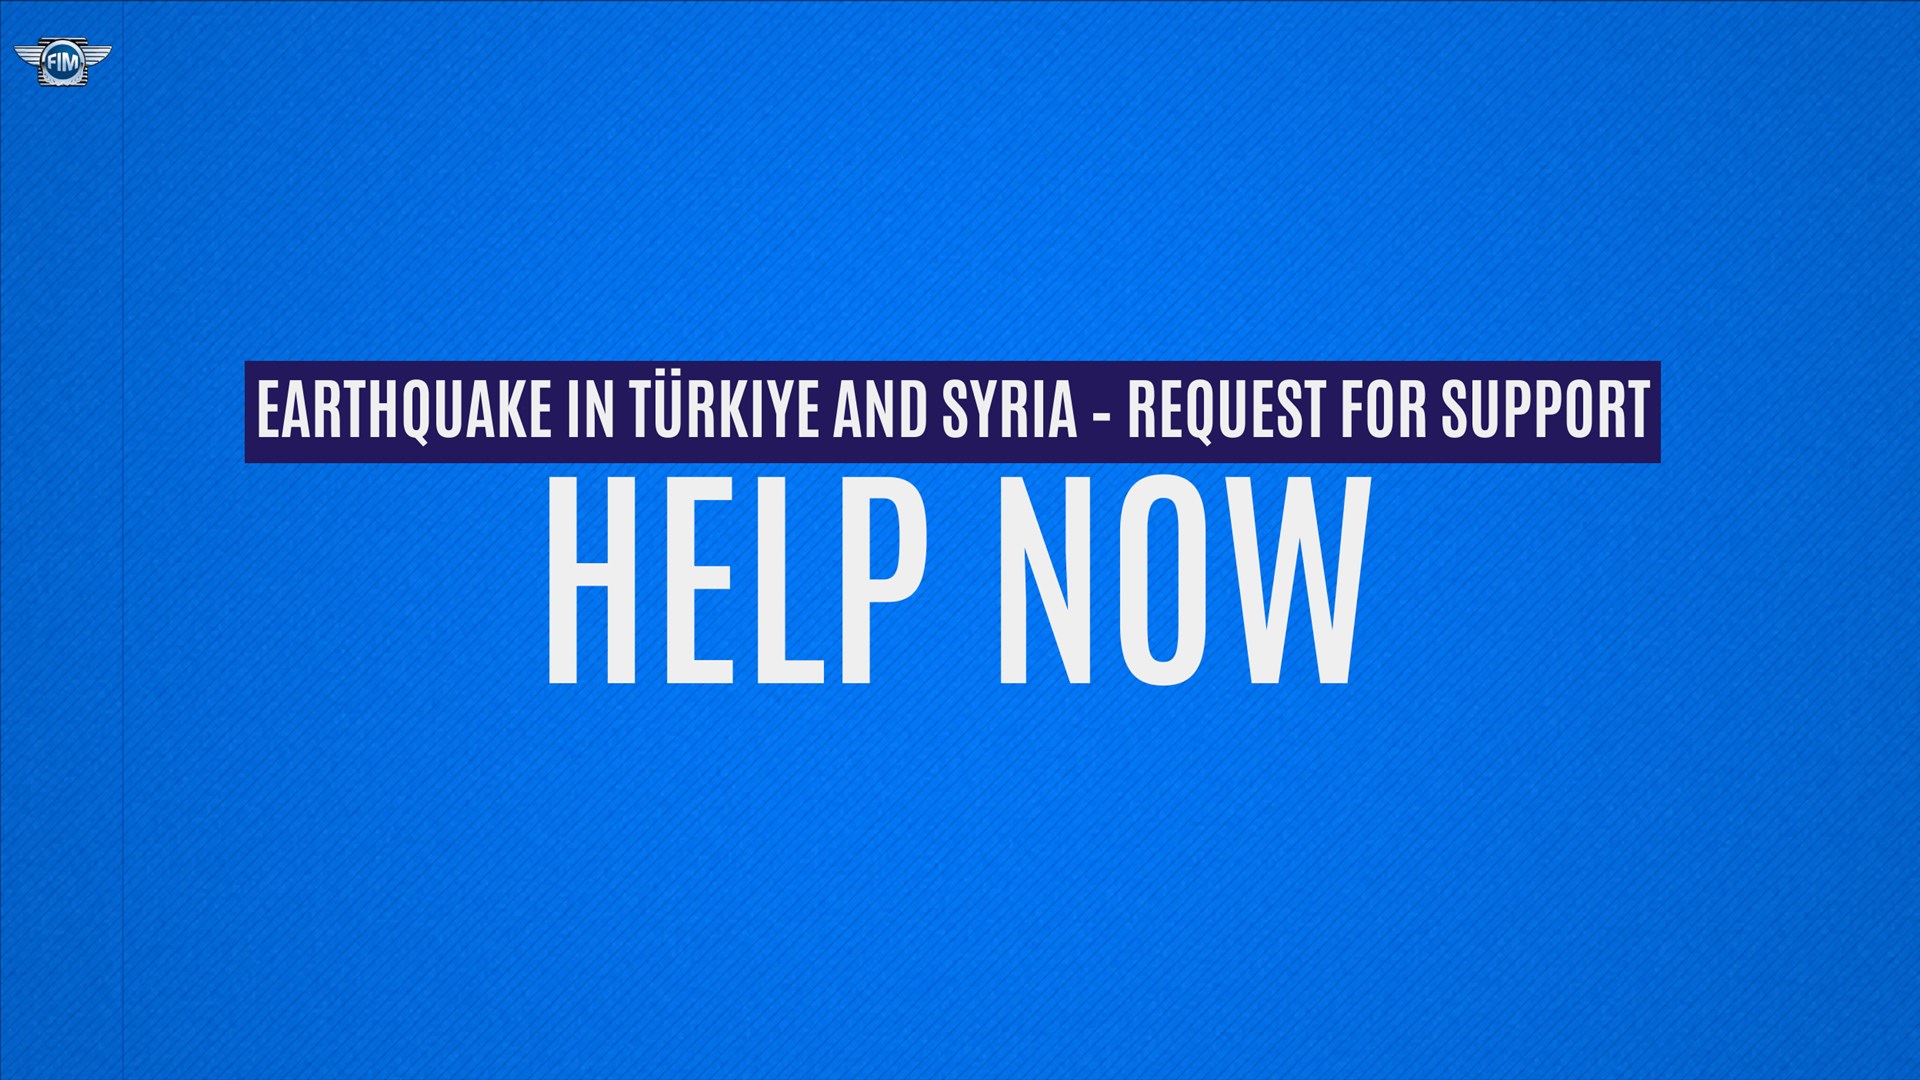 Türkyie and Syria earthquake